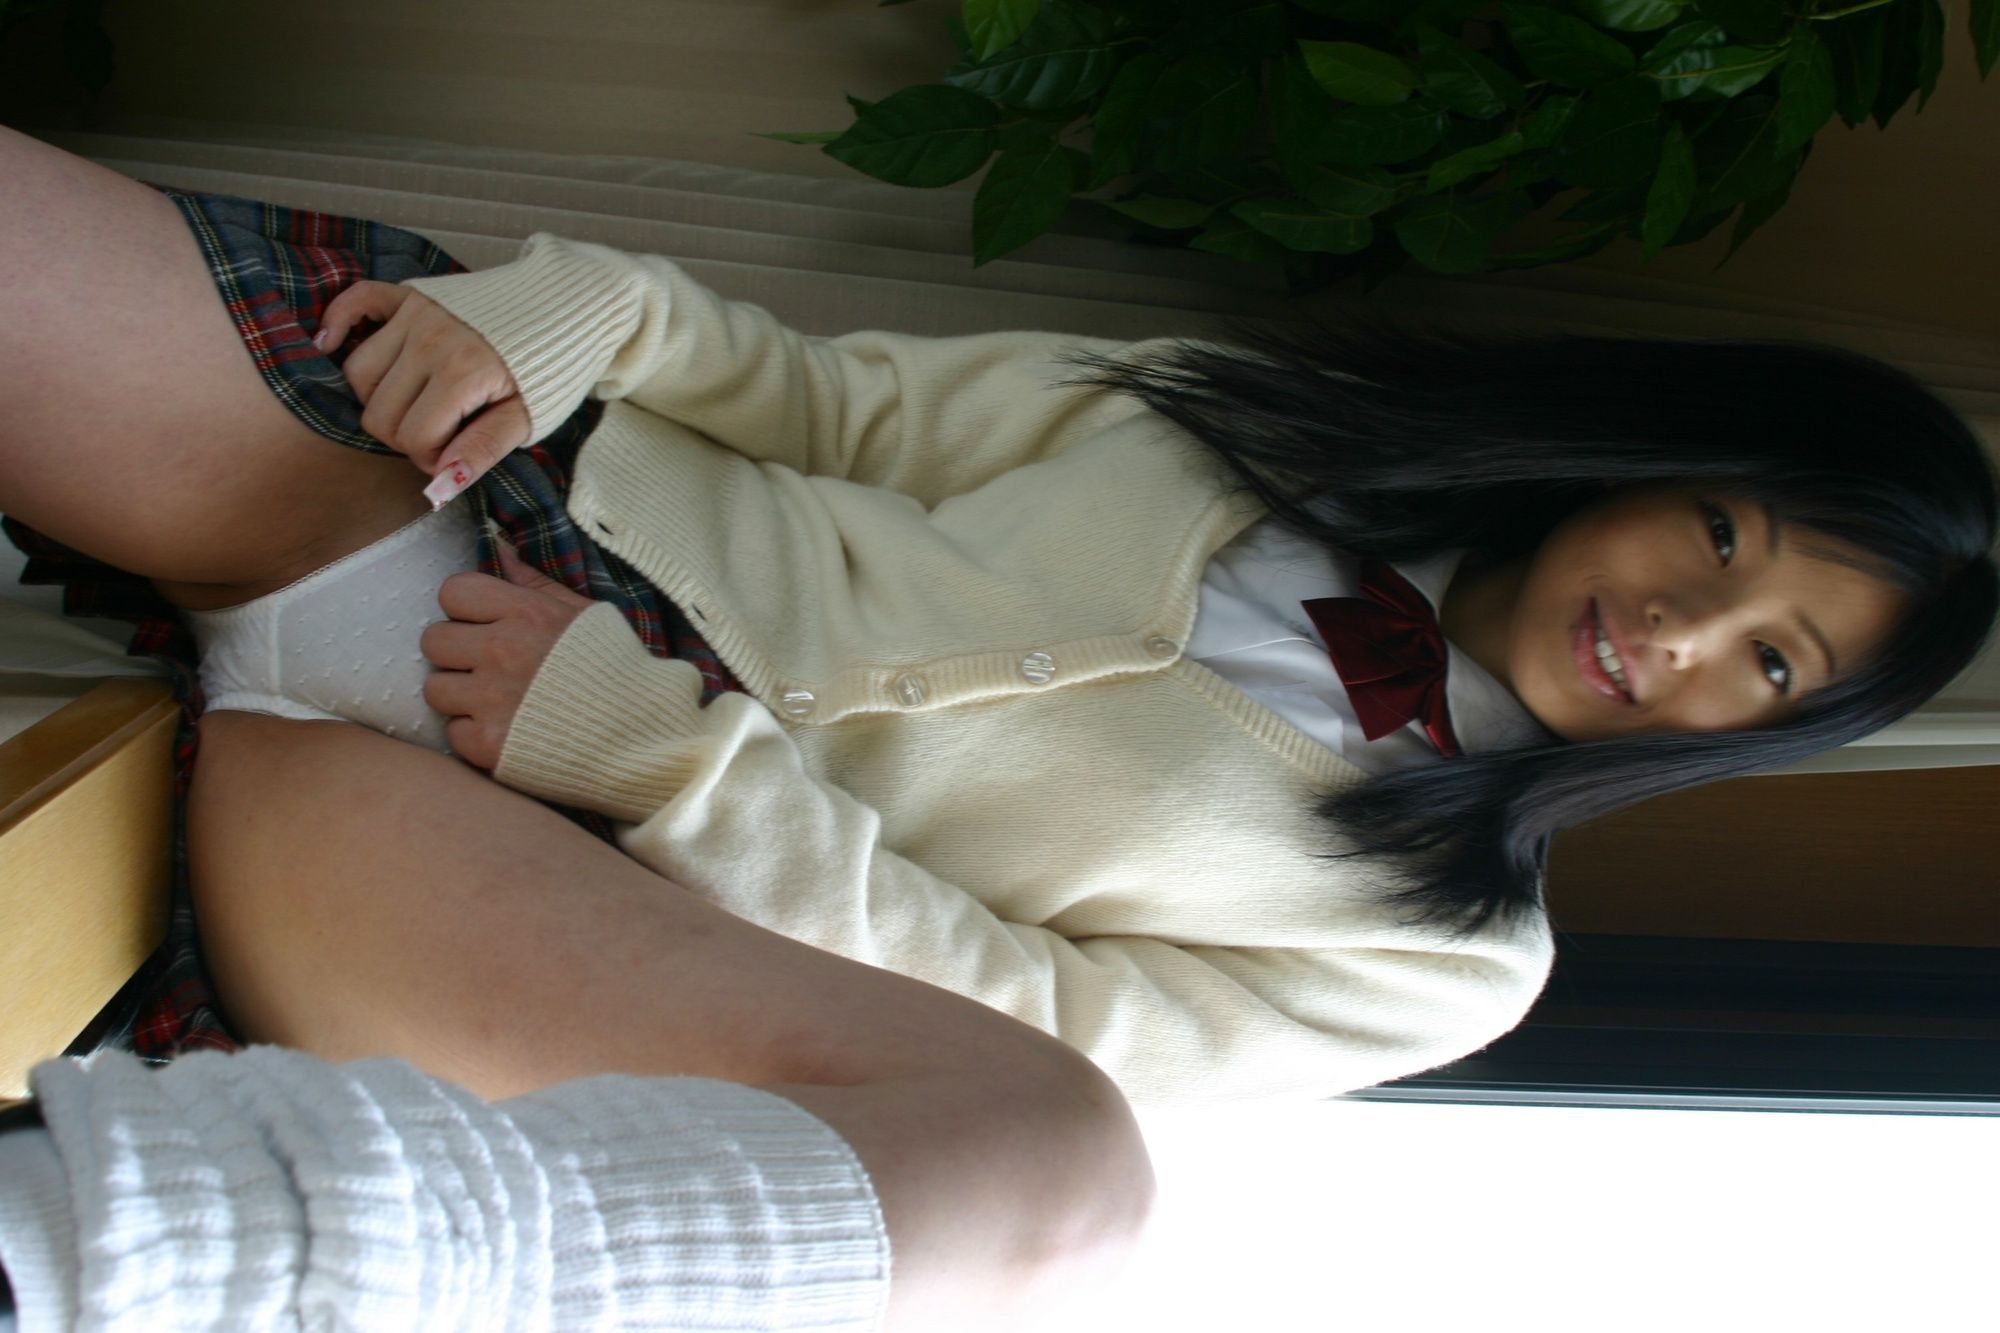 Asian schoolgirl looks for some online exposure #40